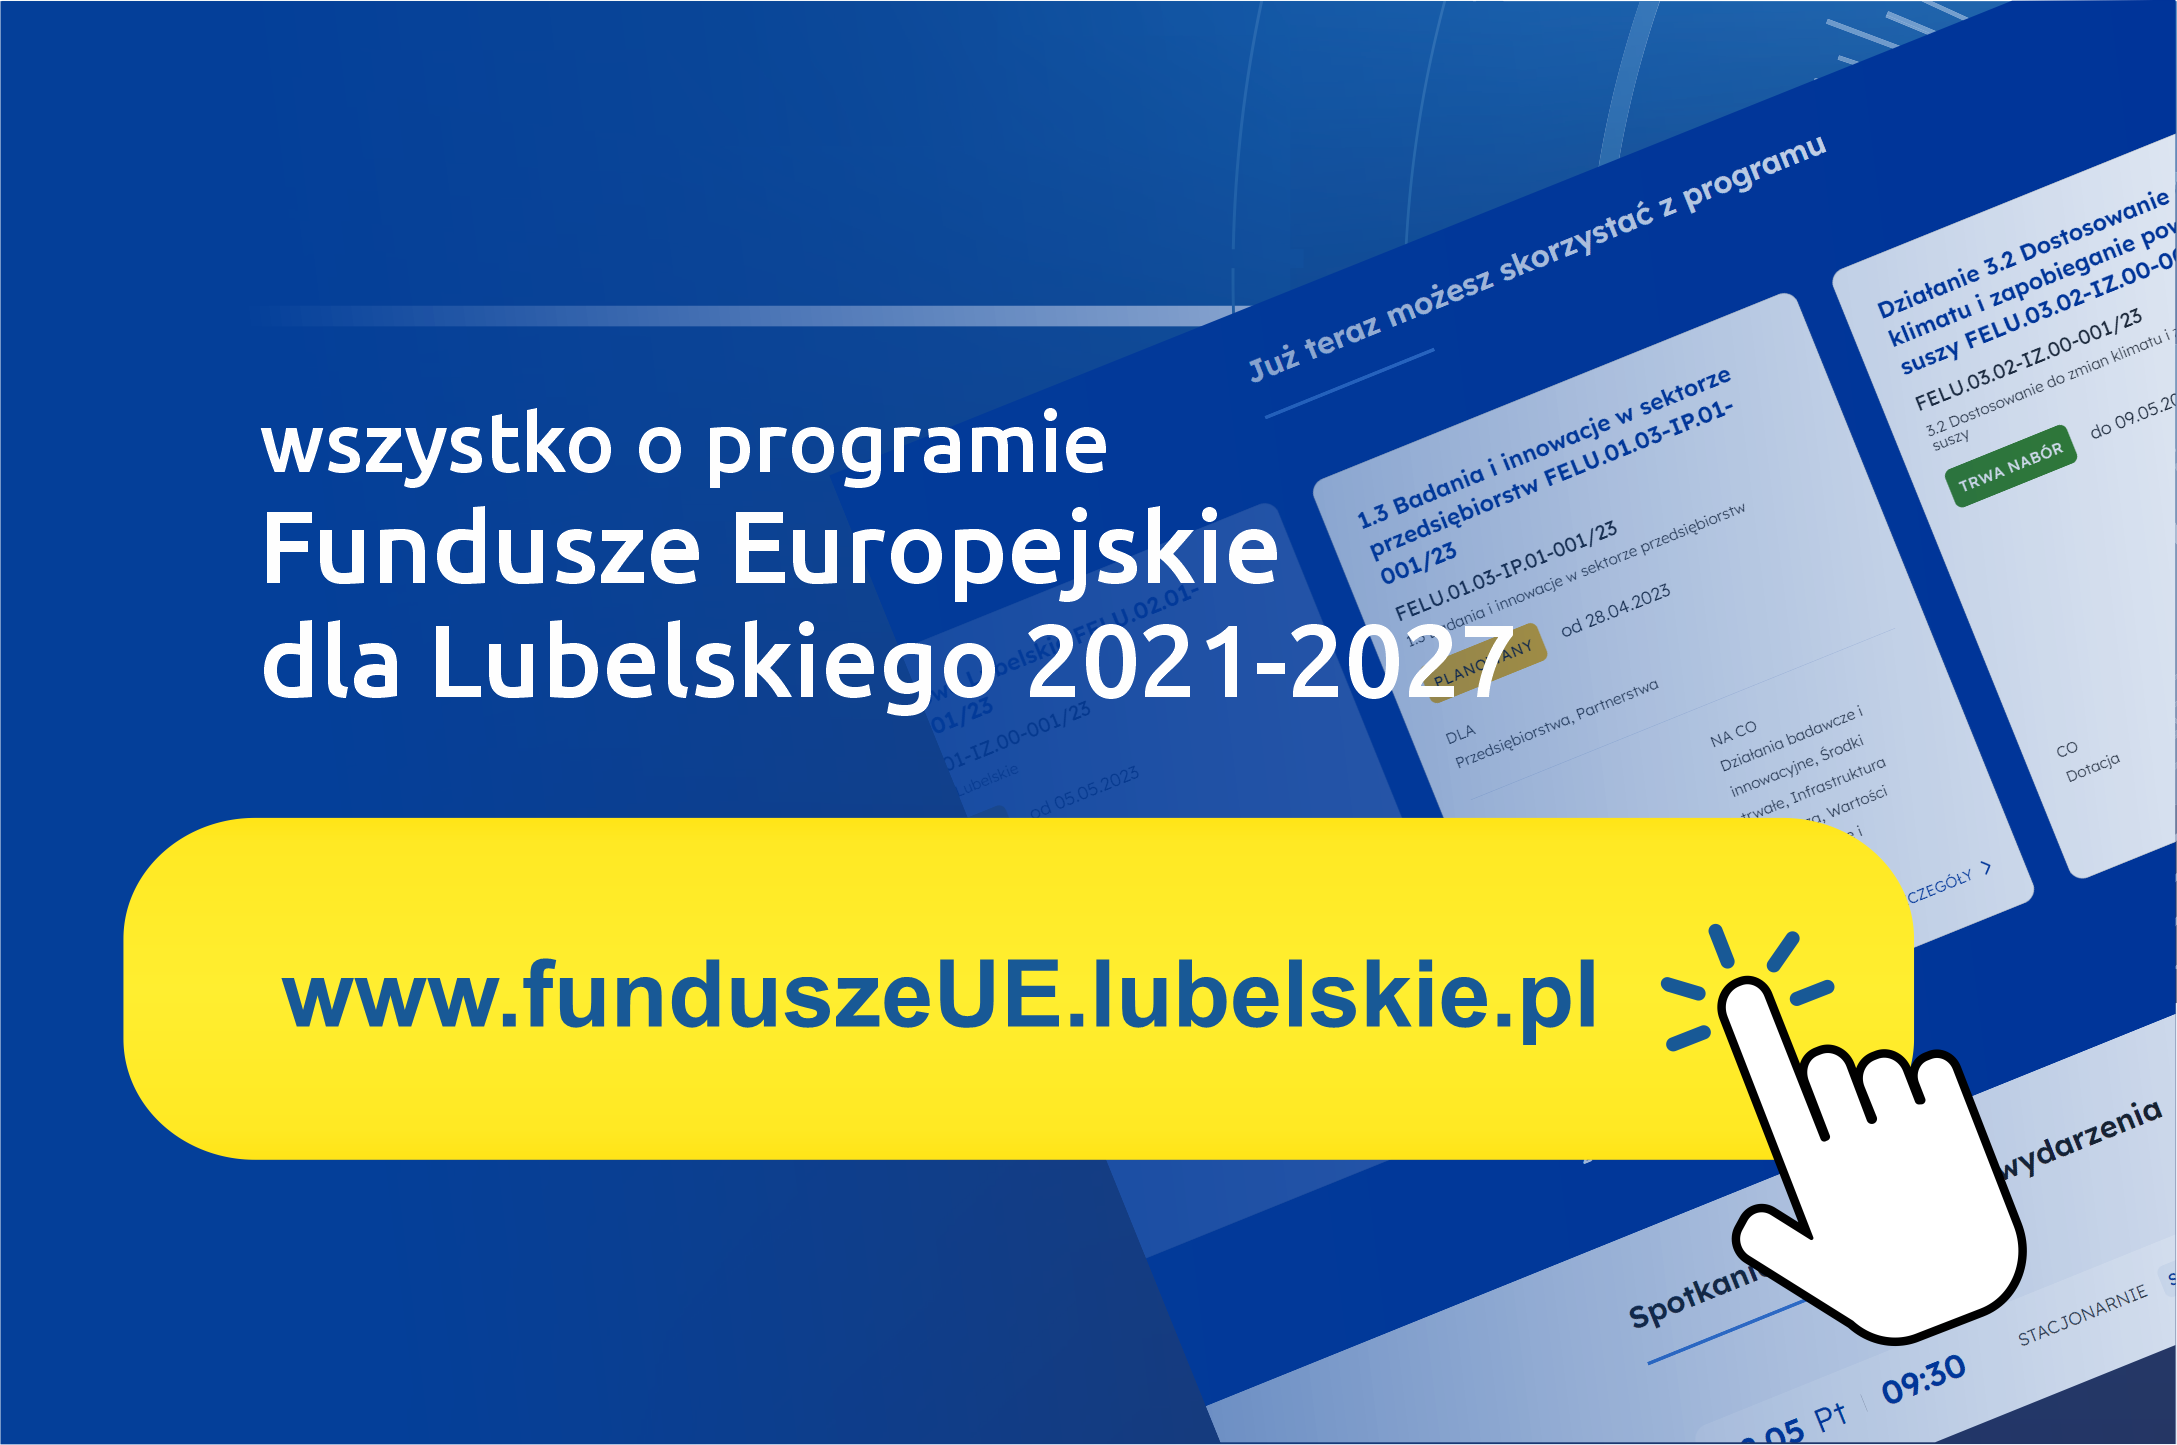 Nowa strona programu Fundusze Europejskie dla Lubelskiego 2021-2027